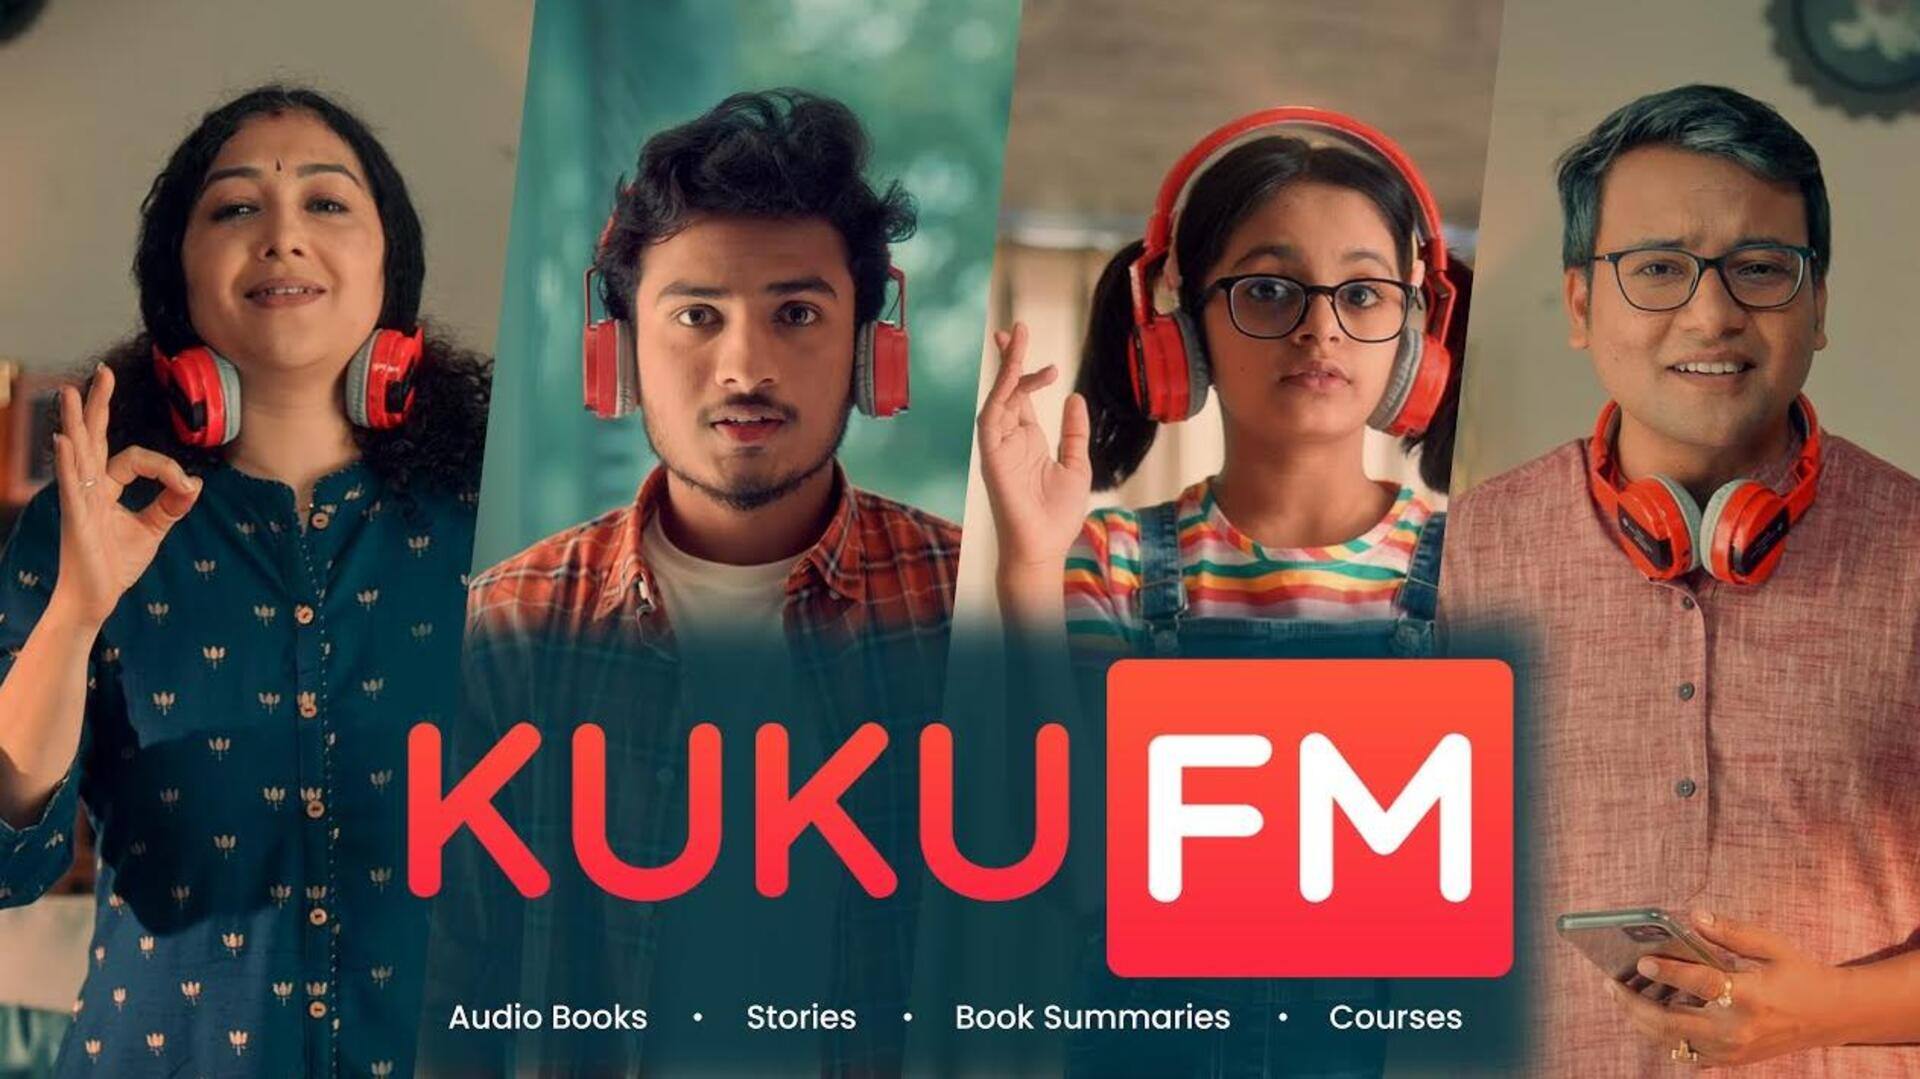 Google-backed Kuku FM raises $25 million, plans to expand catalog